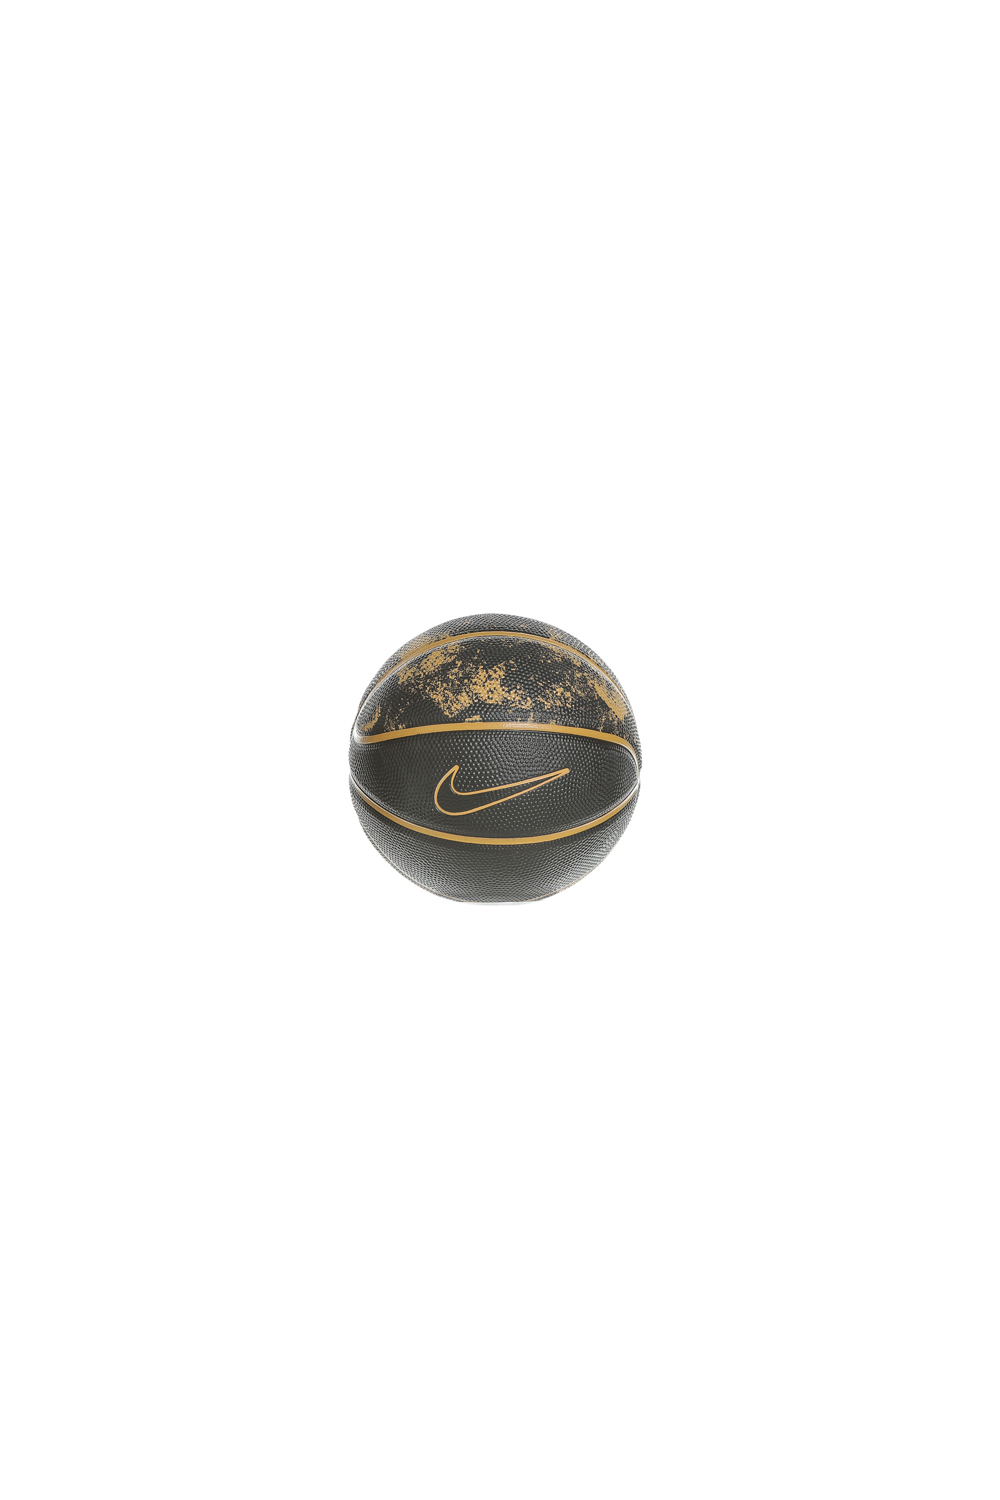 NIKE – Μπαλα basketball mini NIKE LEBRON SKILLS N.KI.14.03 μαυρη χρυση